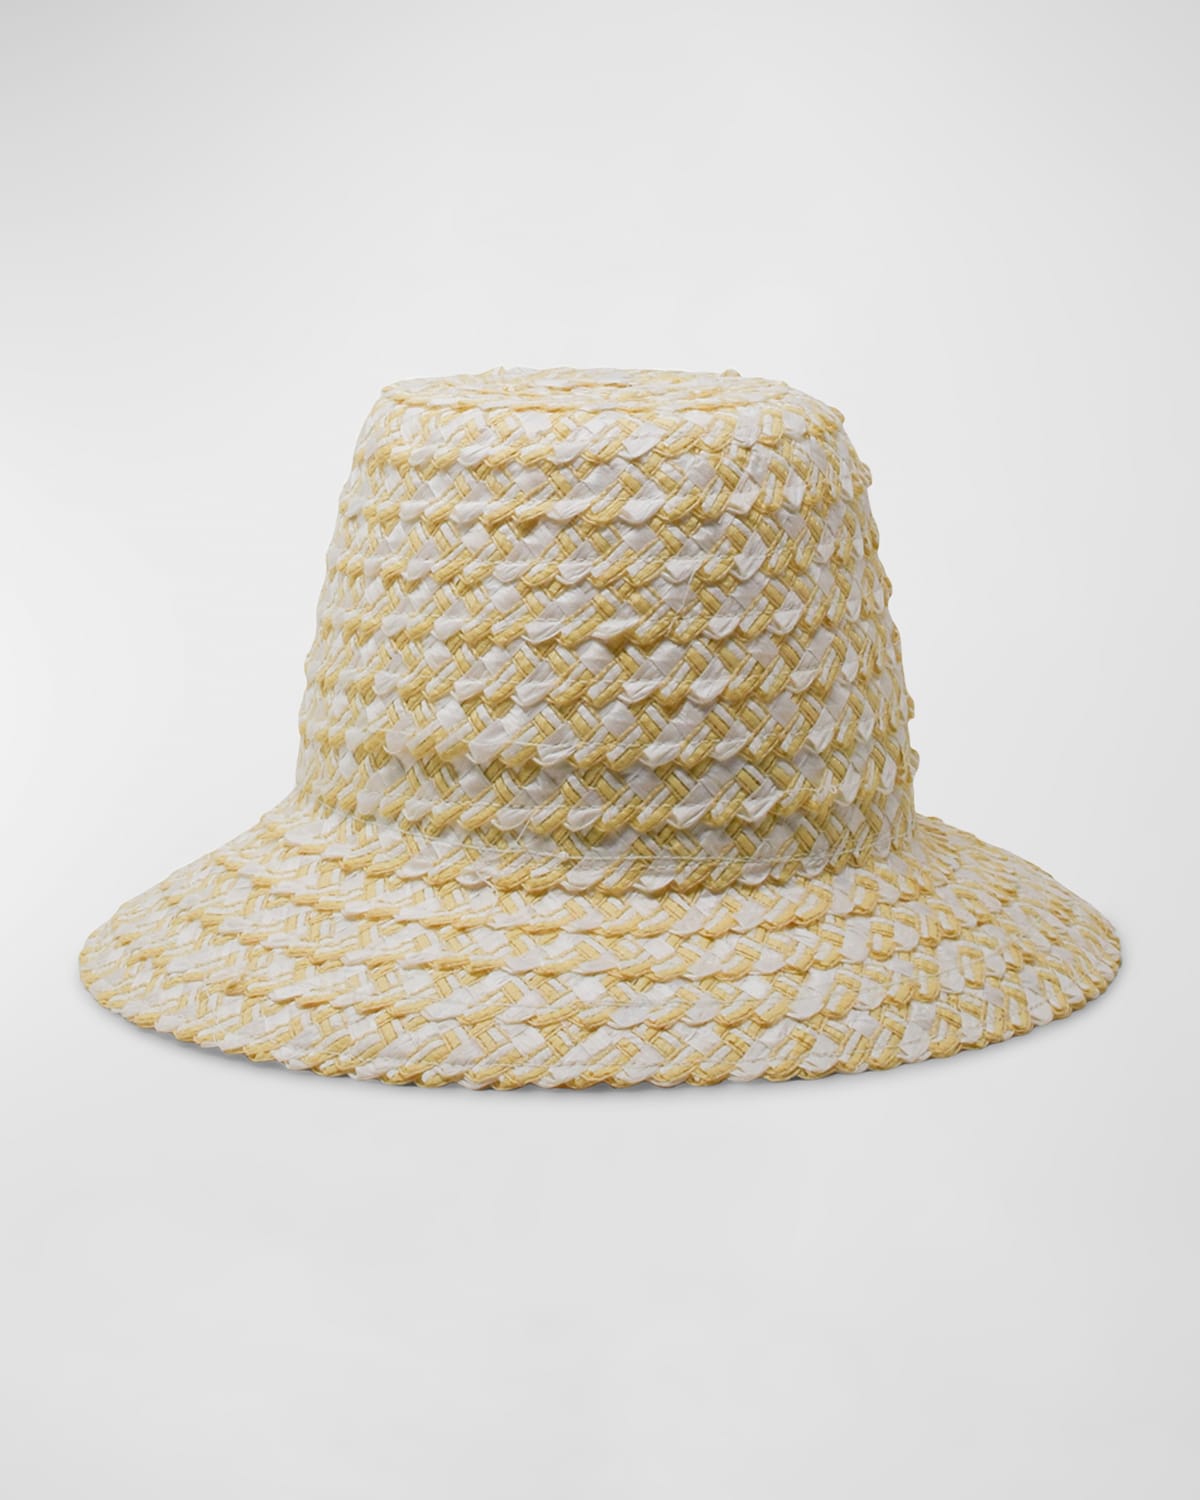 Gigi Burris Iris Straw Structured Hat